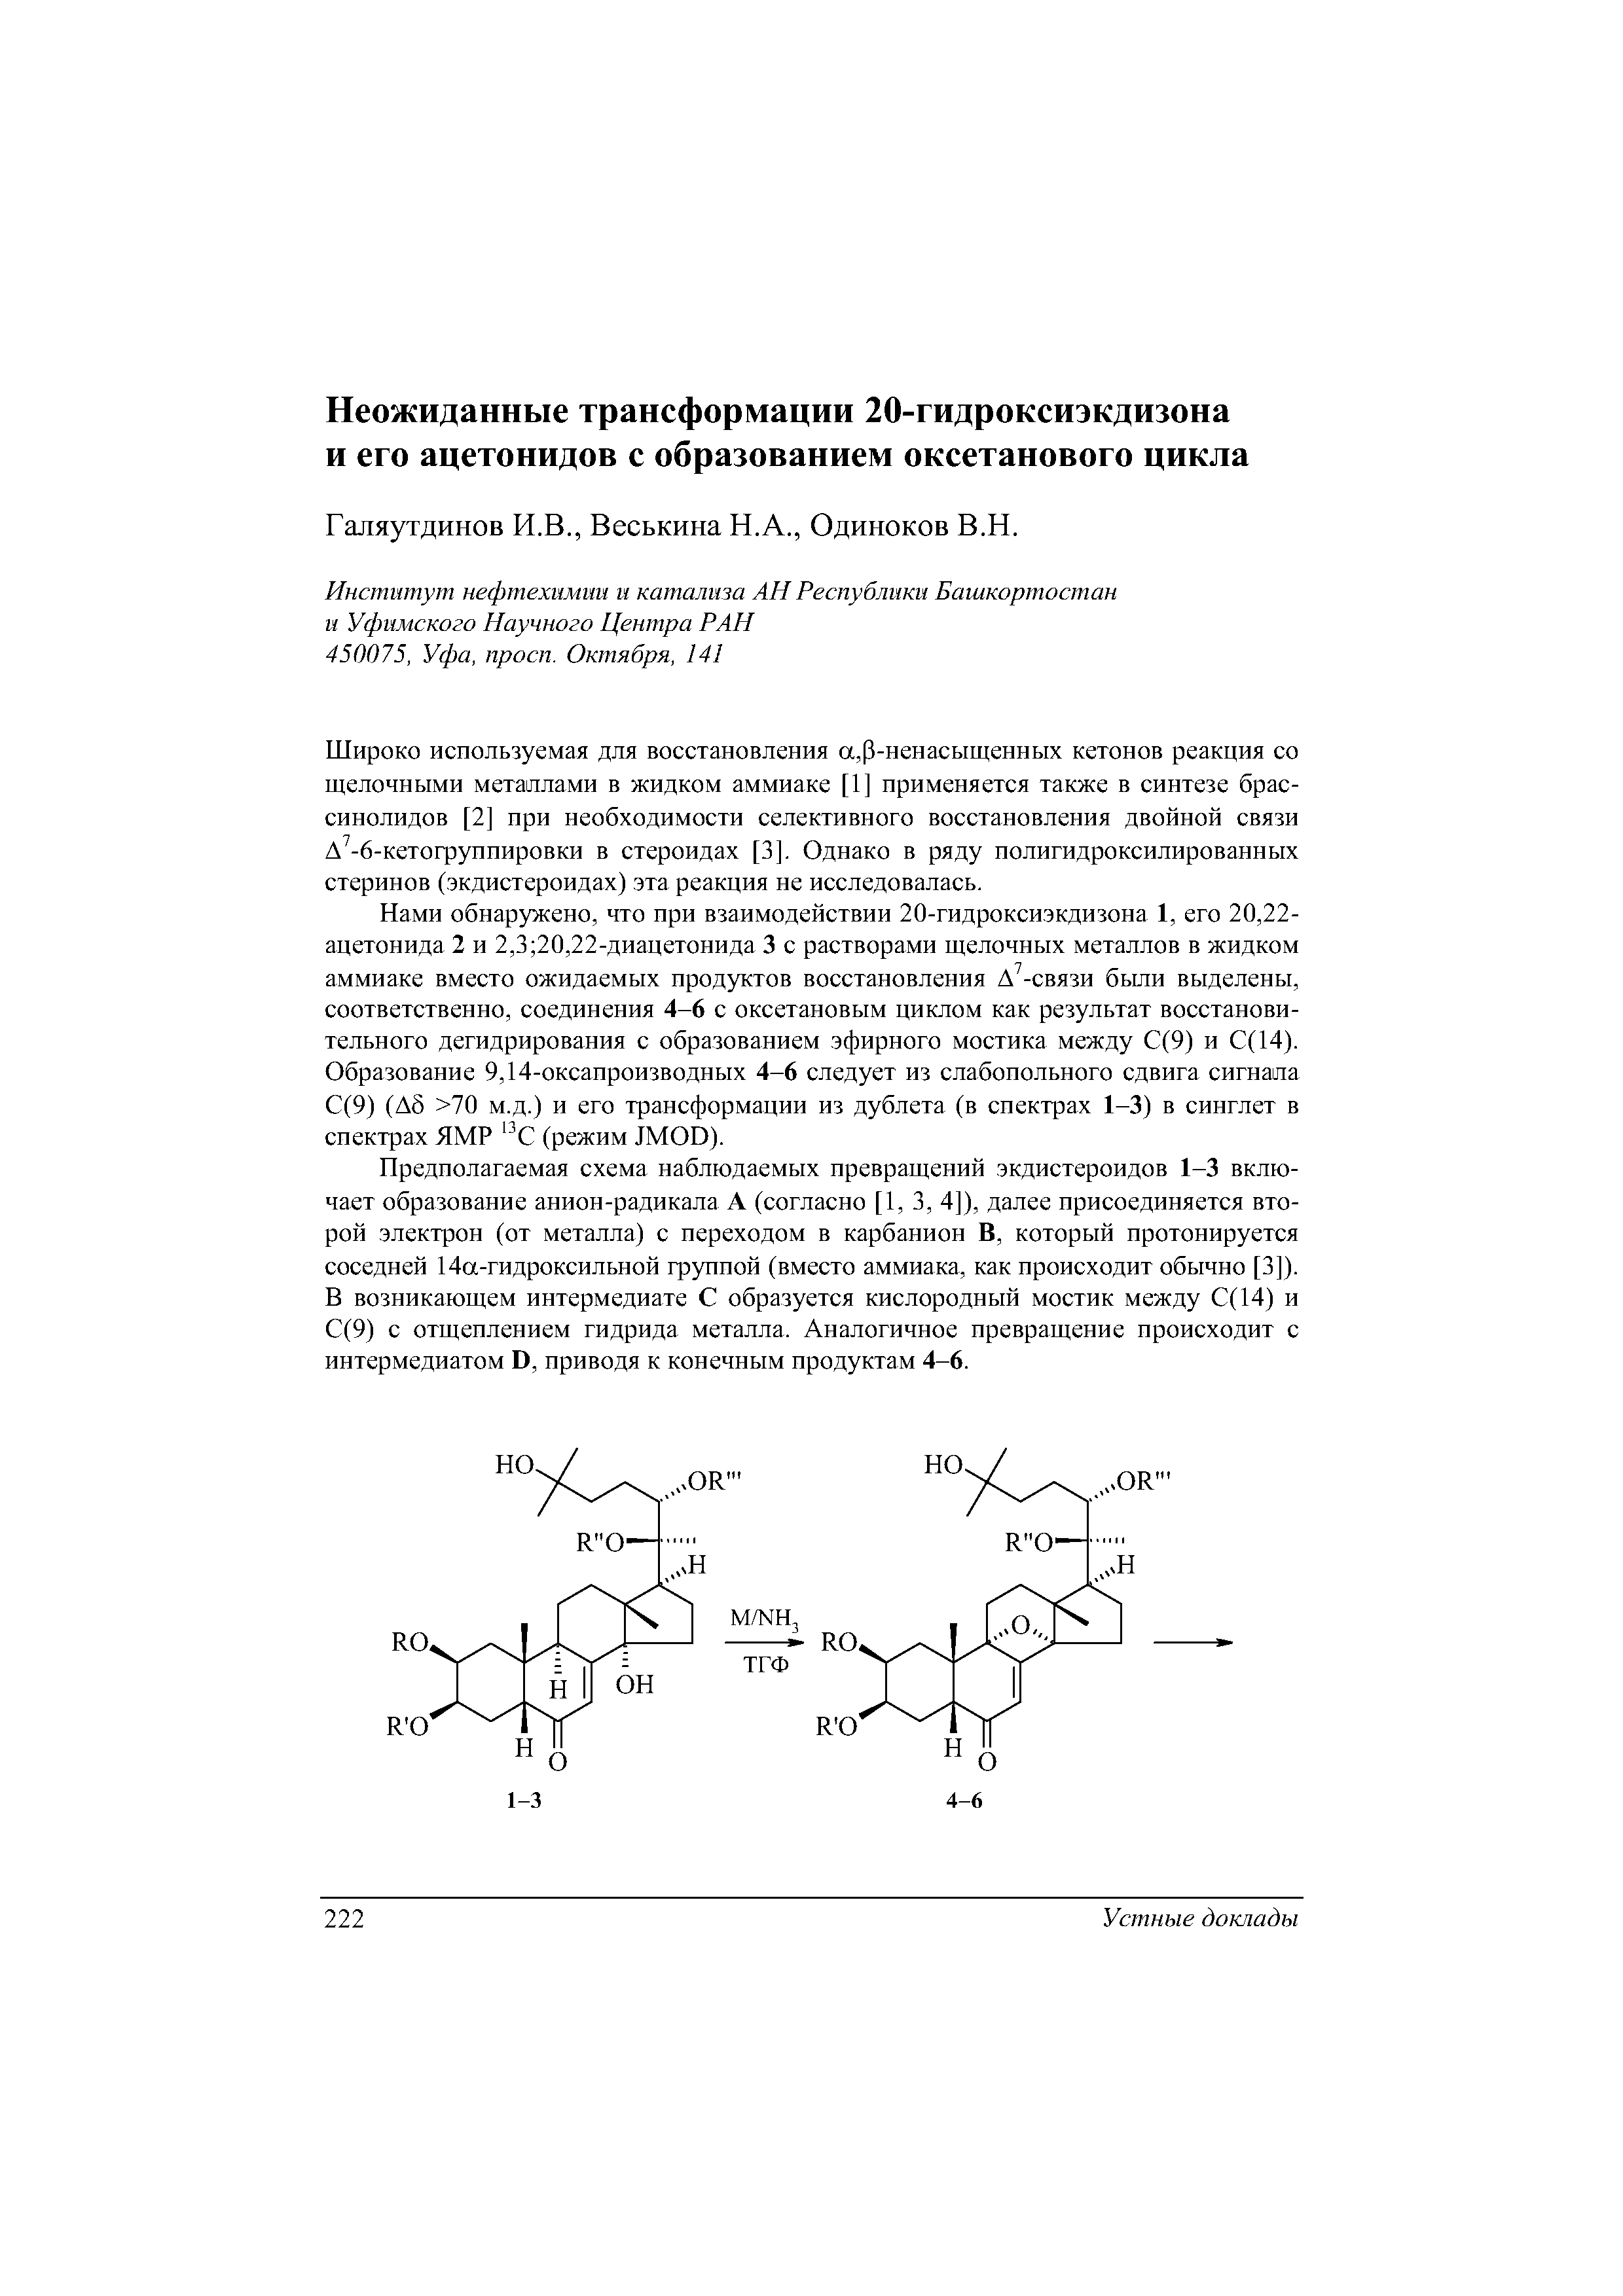 Предполагаемая схема наблюдаемых превращений экдистероидов 1-3 включает образование анион-радикала А (согласно [1, 3, 4]), далее присоединяется второй электрон (от металла) с переходом в карбанион В, который протонируется соседней 14а-гидроксильной группой (вместо аммиака, как происходит обычно [3]). В возникающем интермедиате С образуется кислородный мостик между С(14) и С(9) с отщеплением гидрида металла. Аналогичное превращение происходит с интермедиатом D, приводя к конечным продуктам 4-6.